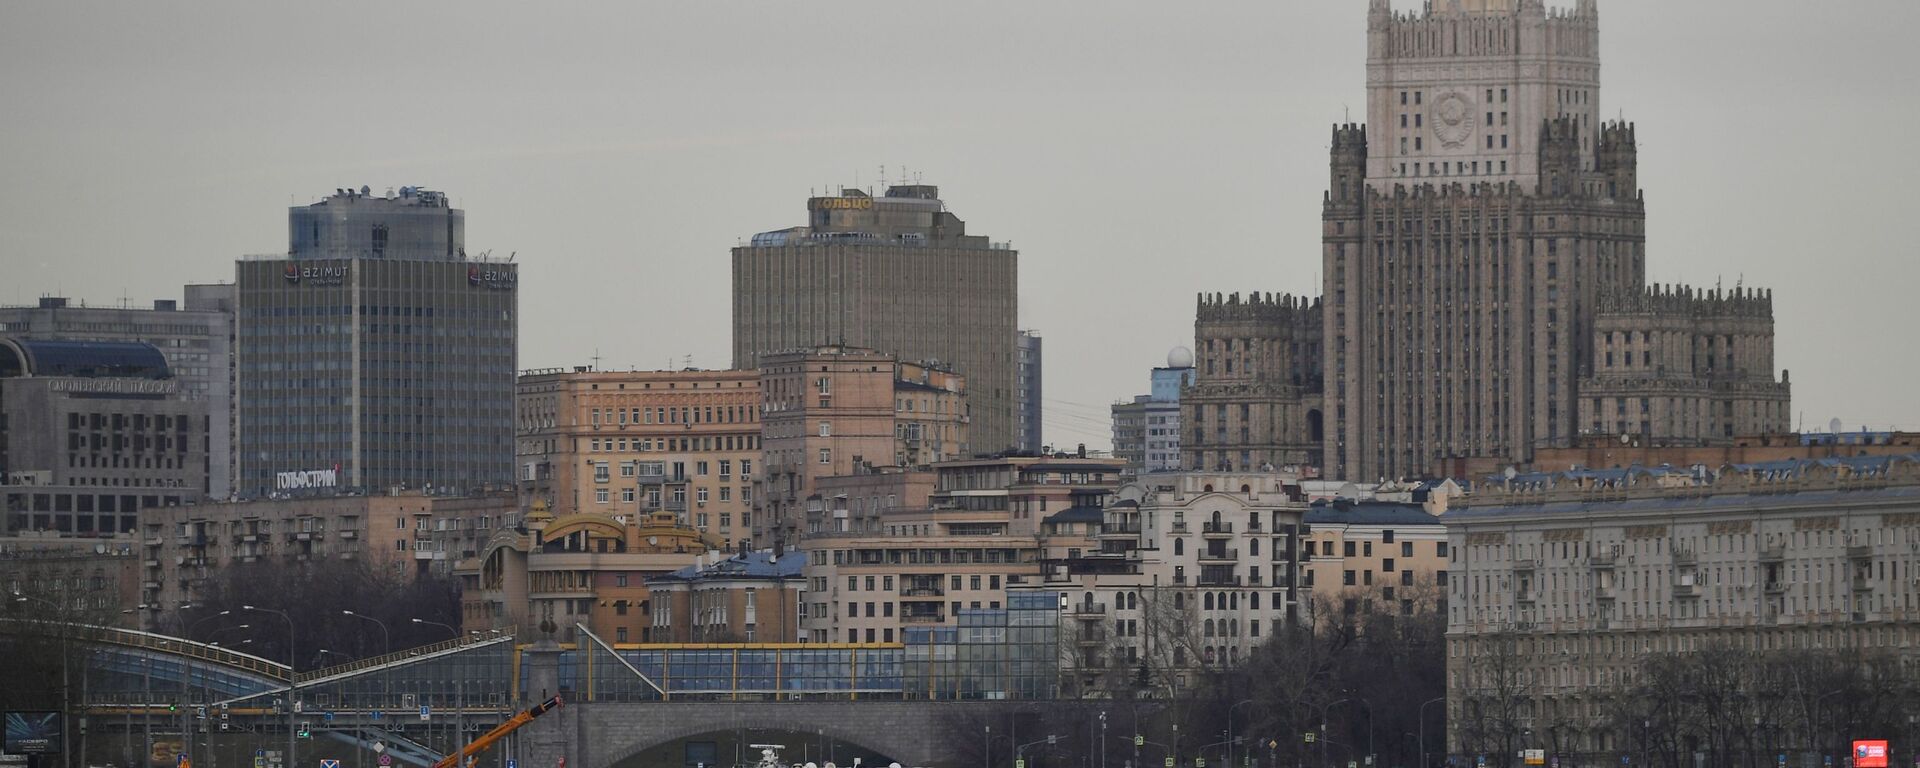 Вид со стороны набережной Москвы-реки на здание МИД РФ в Москве - Sputnik Արմենիա, 1920, 16.08.2021